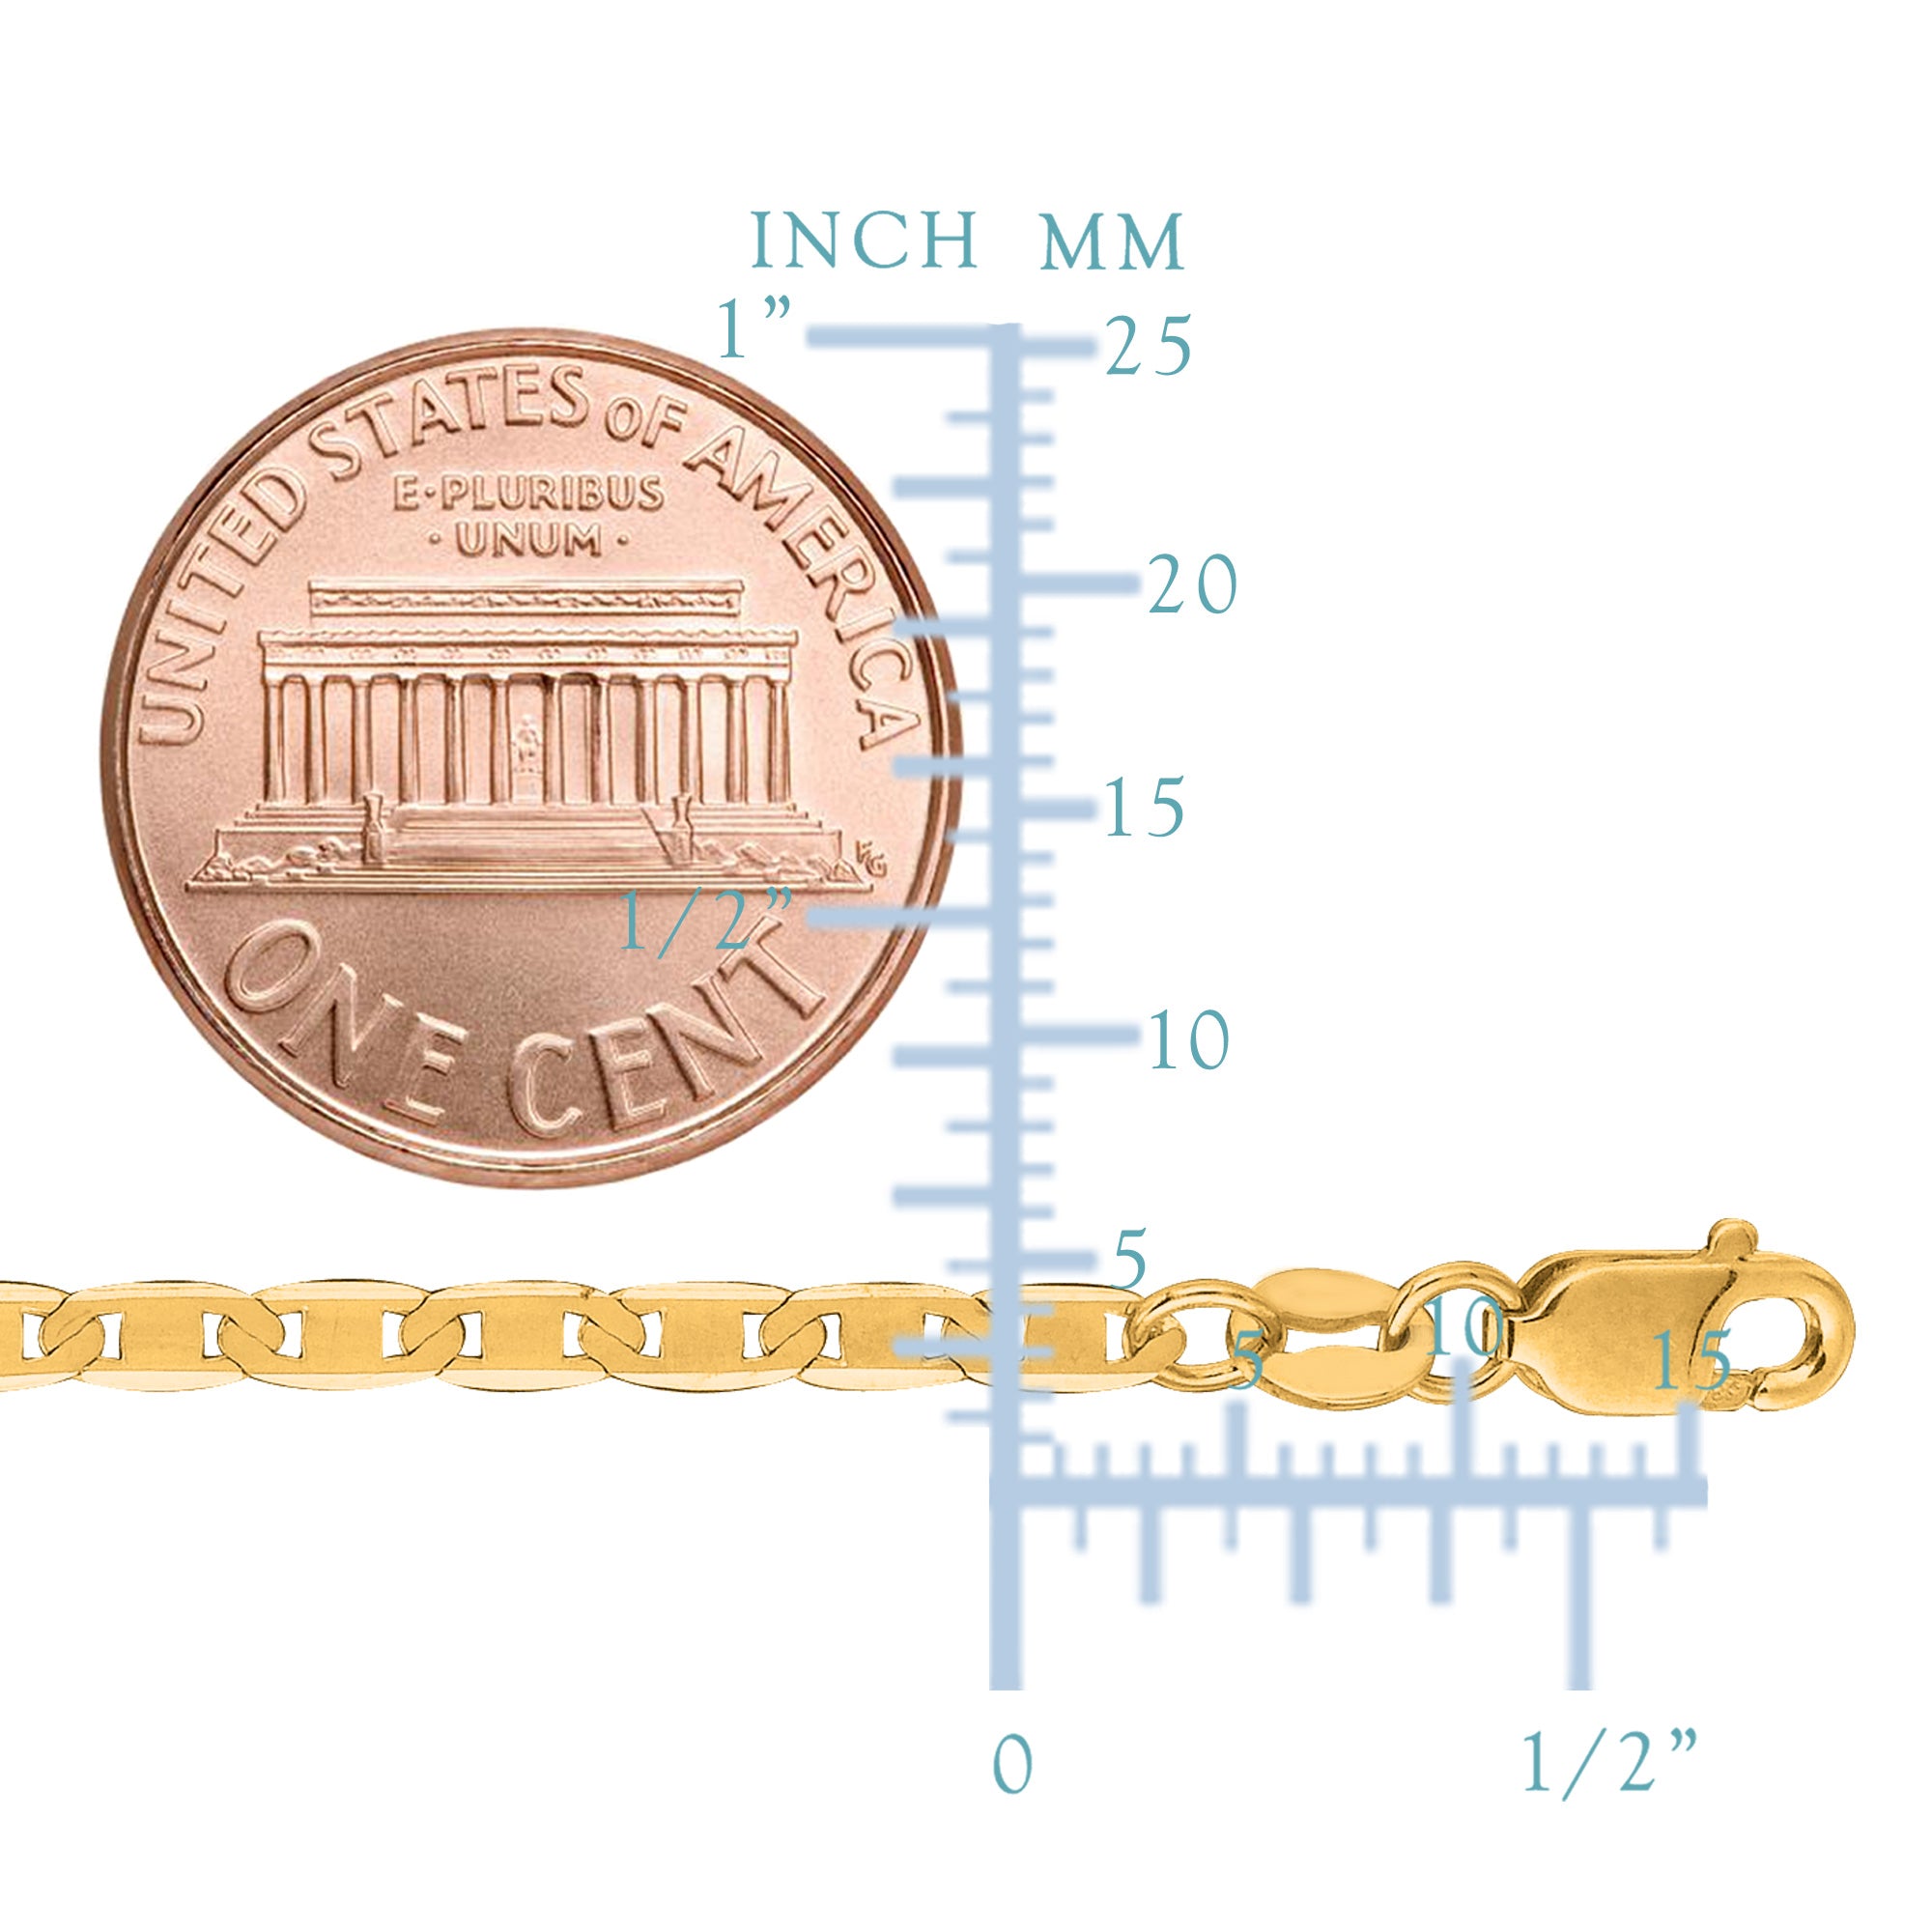 14k gul guld Mariner Link Chain Halskæde, 3,2 mm fine designer smykker til mænd og kvinder